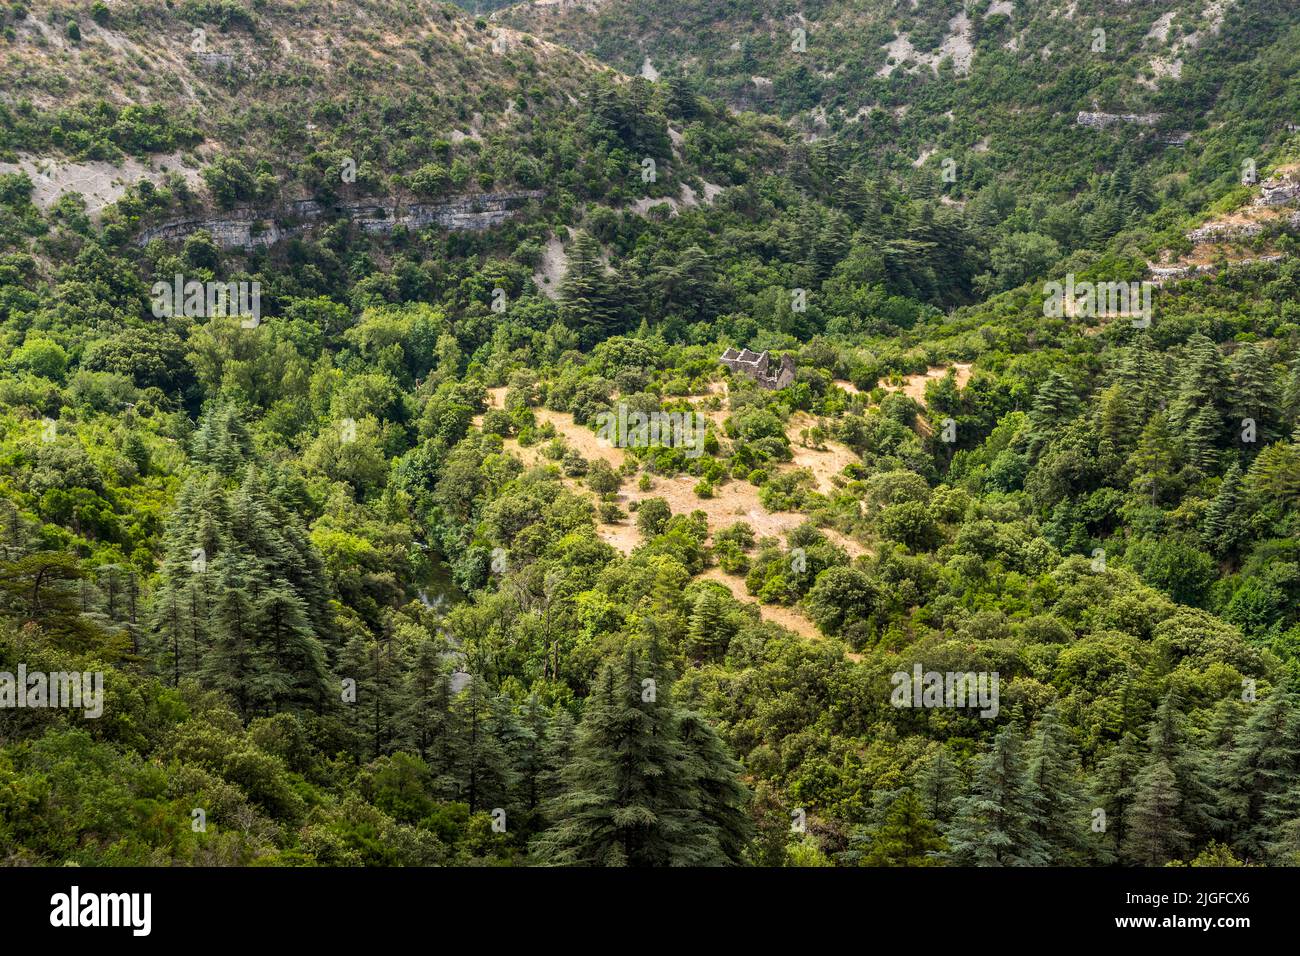 La garganta Cirque de Navacelles, Lodève, Francia. Esta cuenca natural ha sido creada por las aguas del río Vis durante miles de años. El camino desde los campos de grano hasta el molino era a menudo arduo Foto de stock